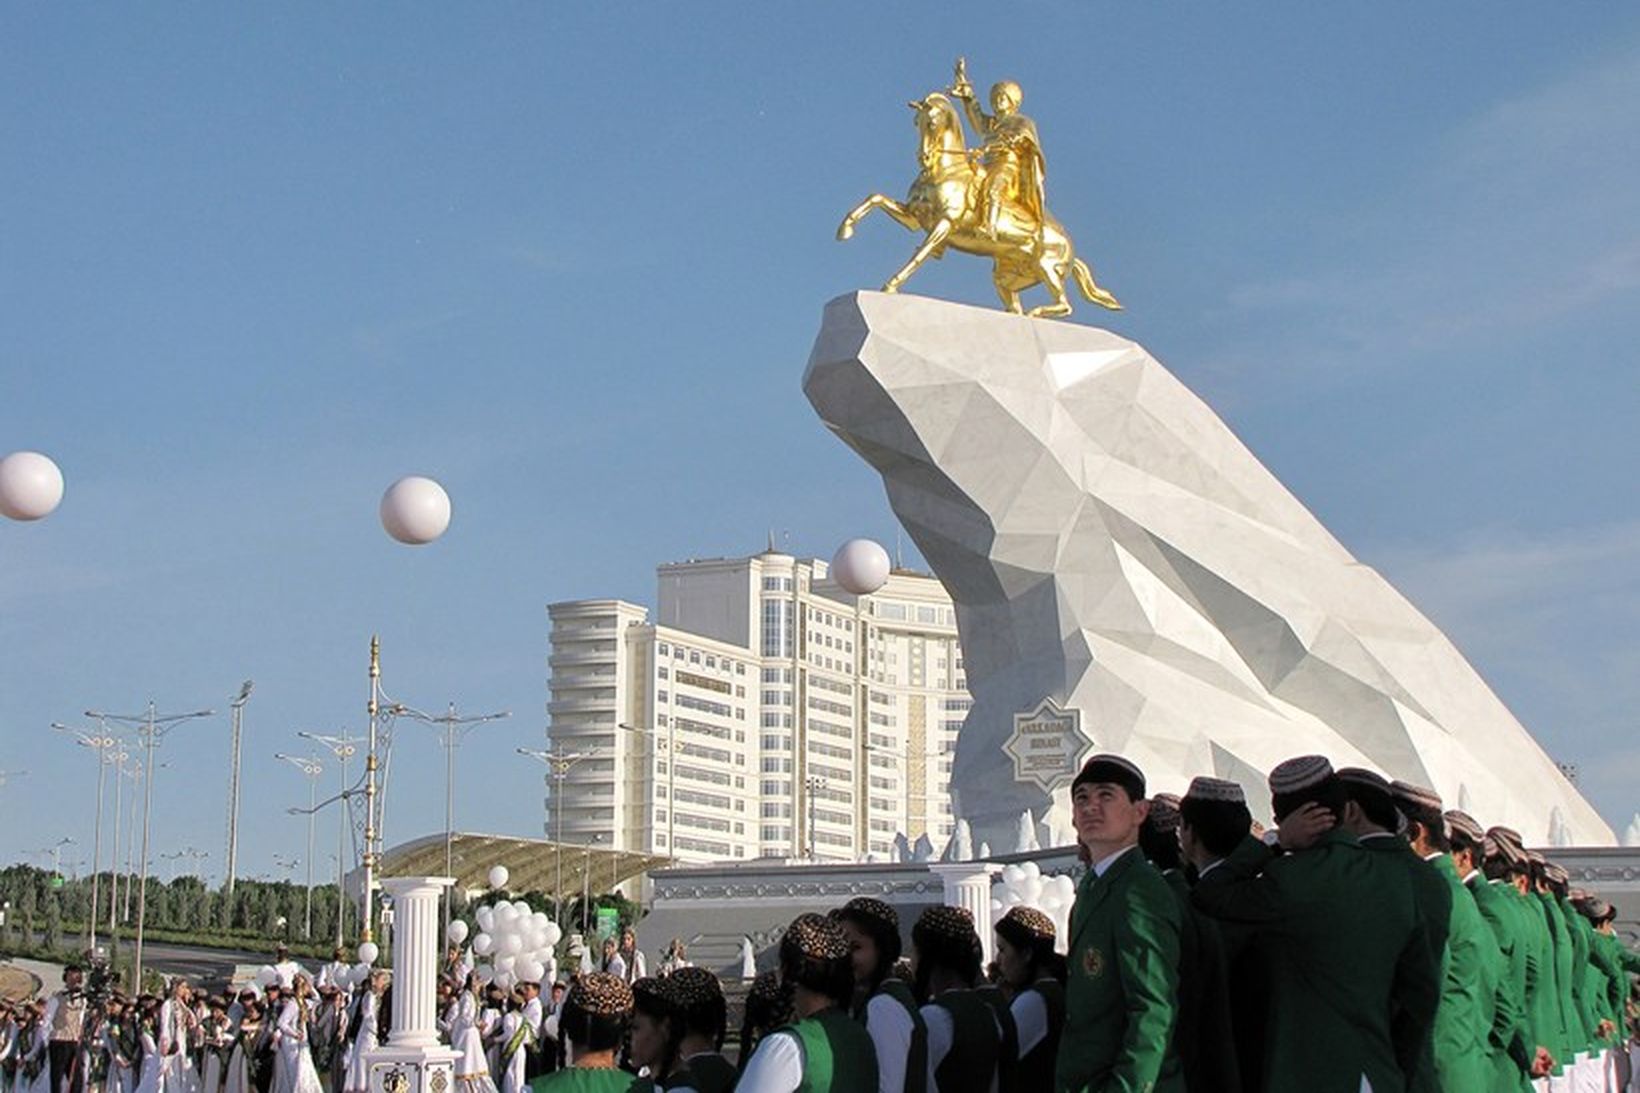 Stytta af forseta Túrkmenistans afhjúpuð í höfuðborginni Ashgabat.